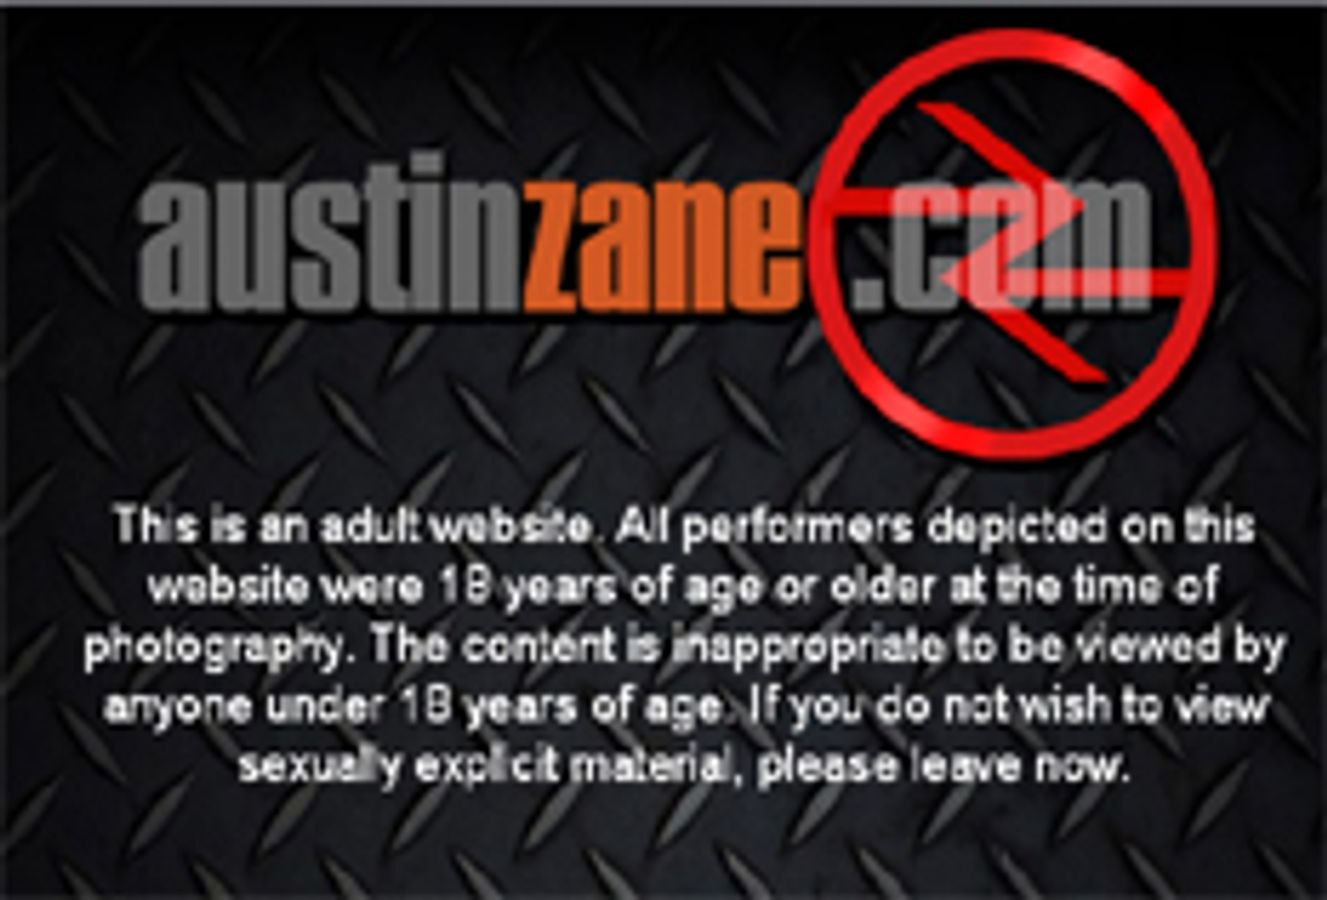 Austin Zane